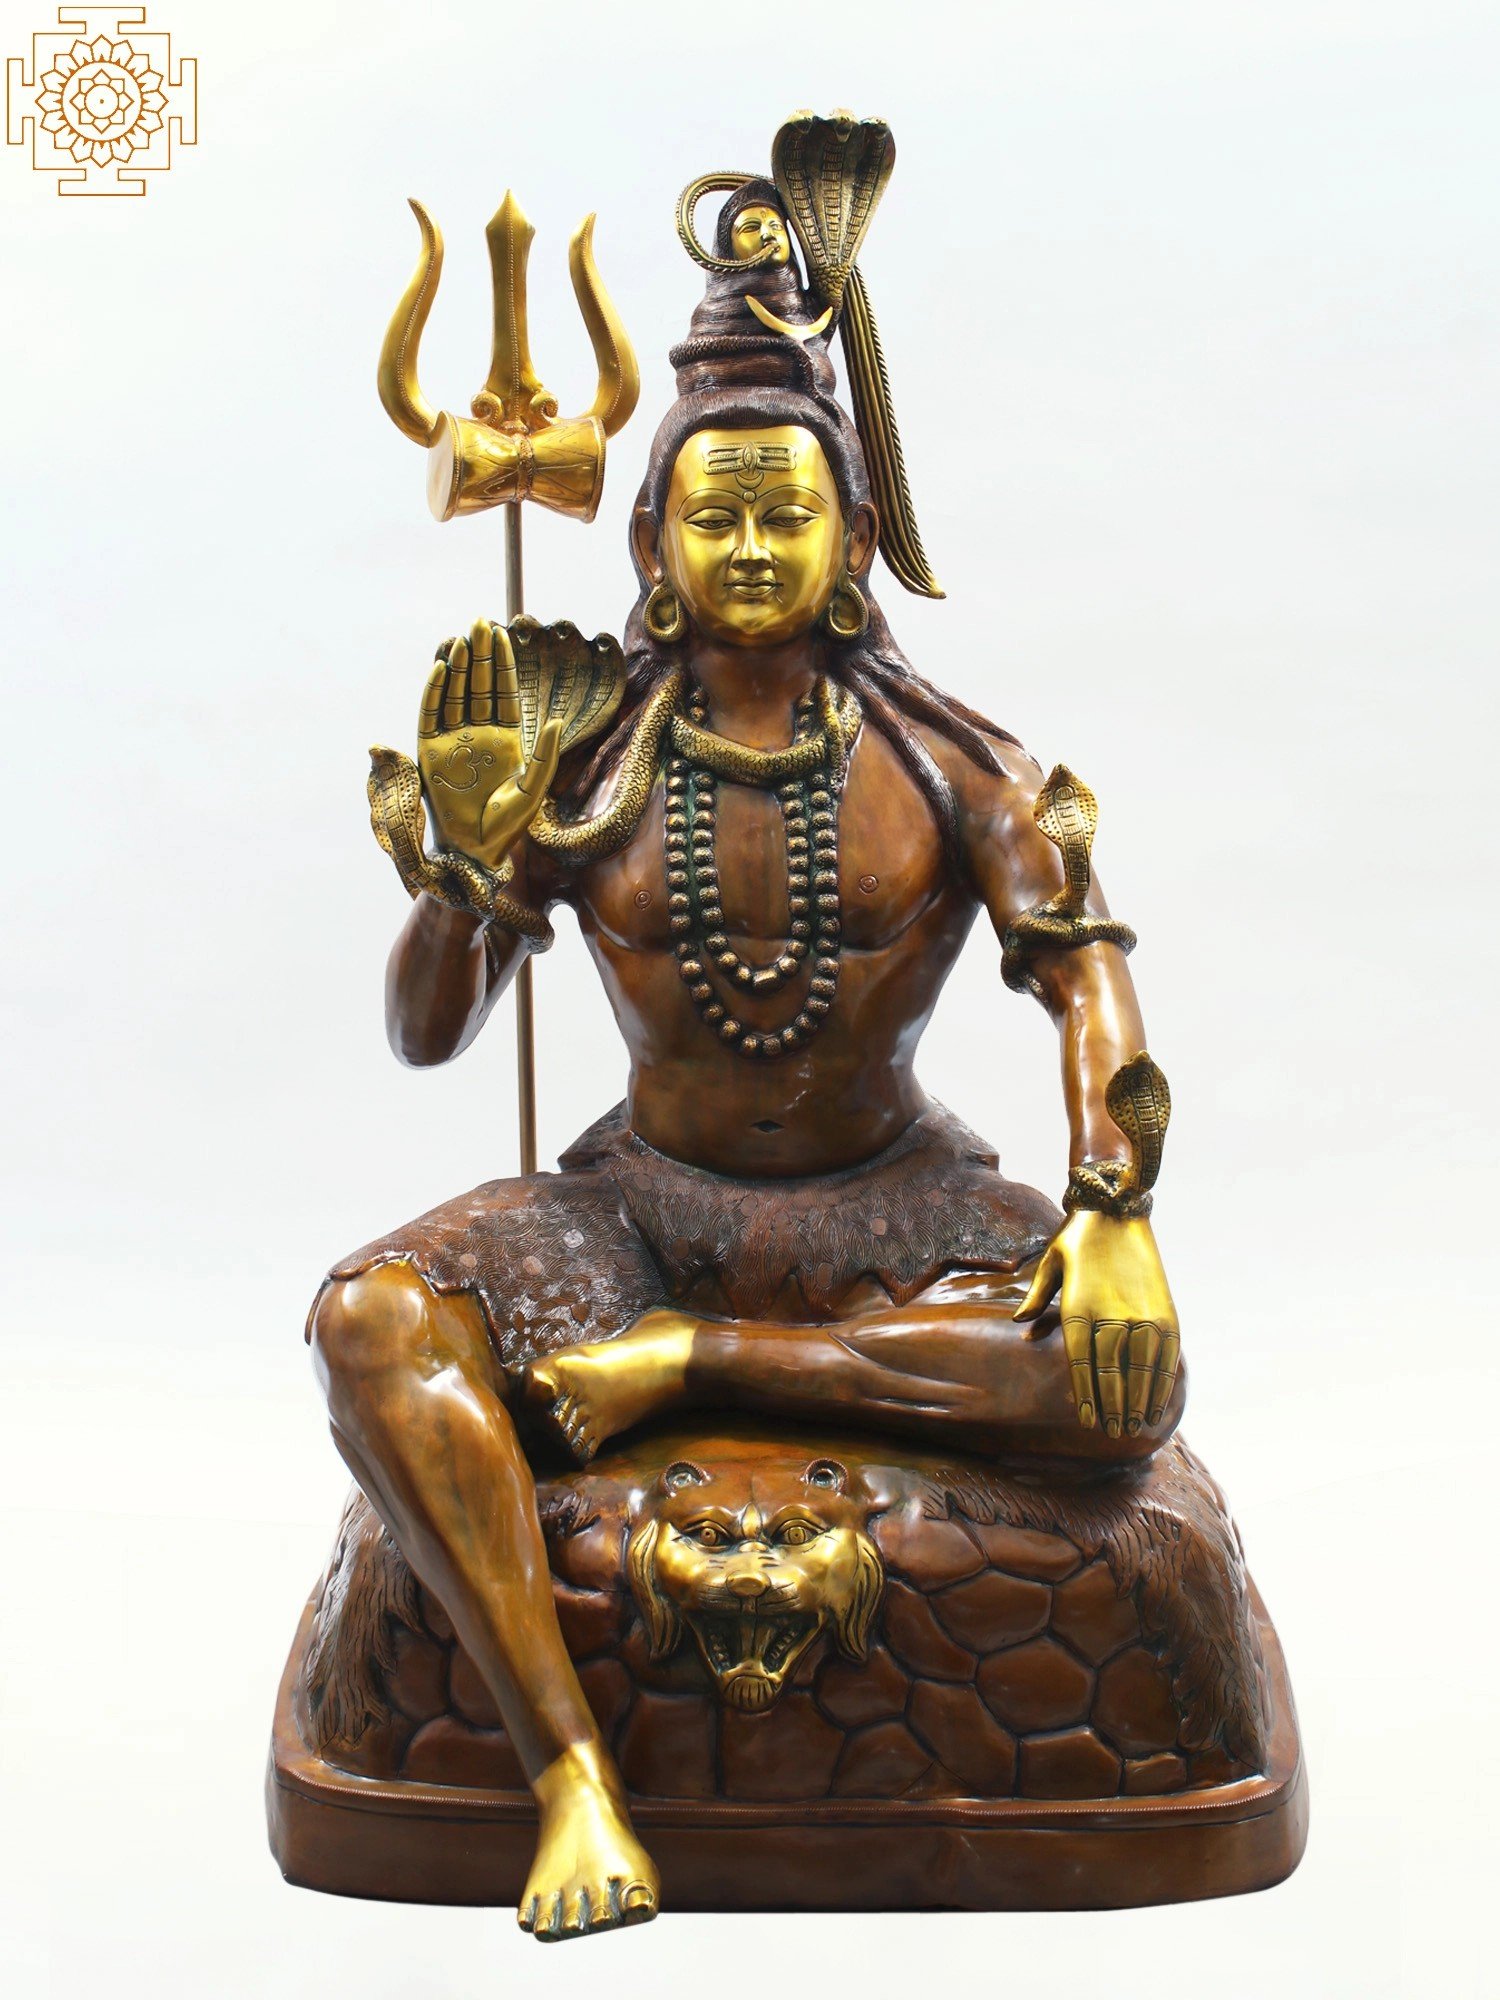 53 Large Bhagawan Shiva Mahadeva Shiva Brass Statue Handmade Exotic India Art